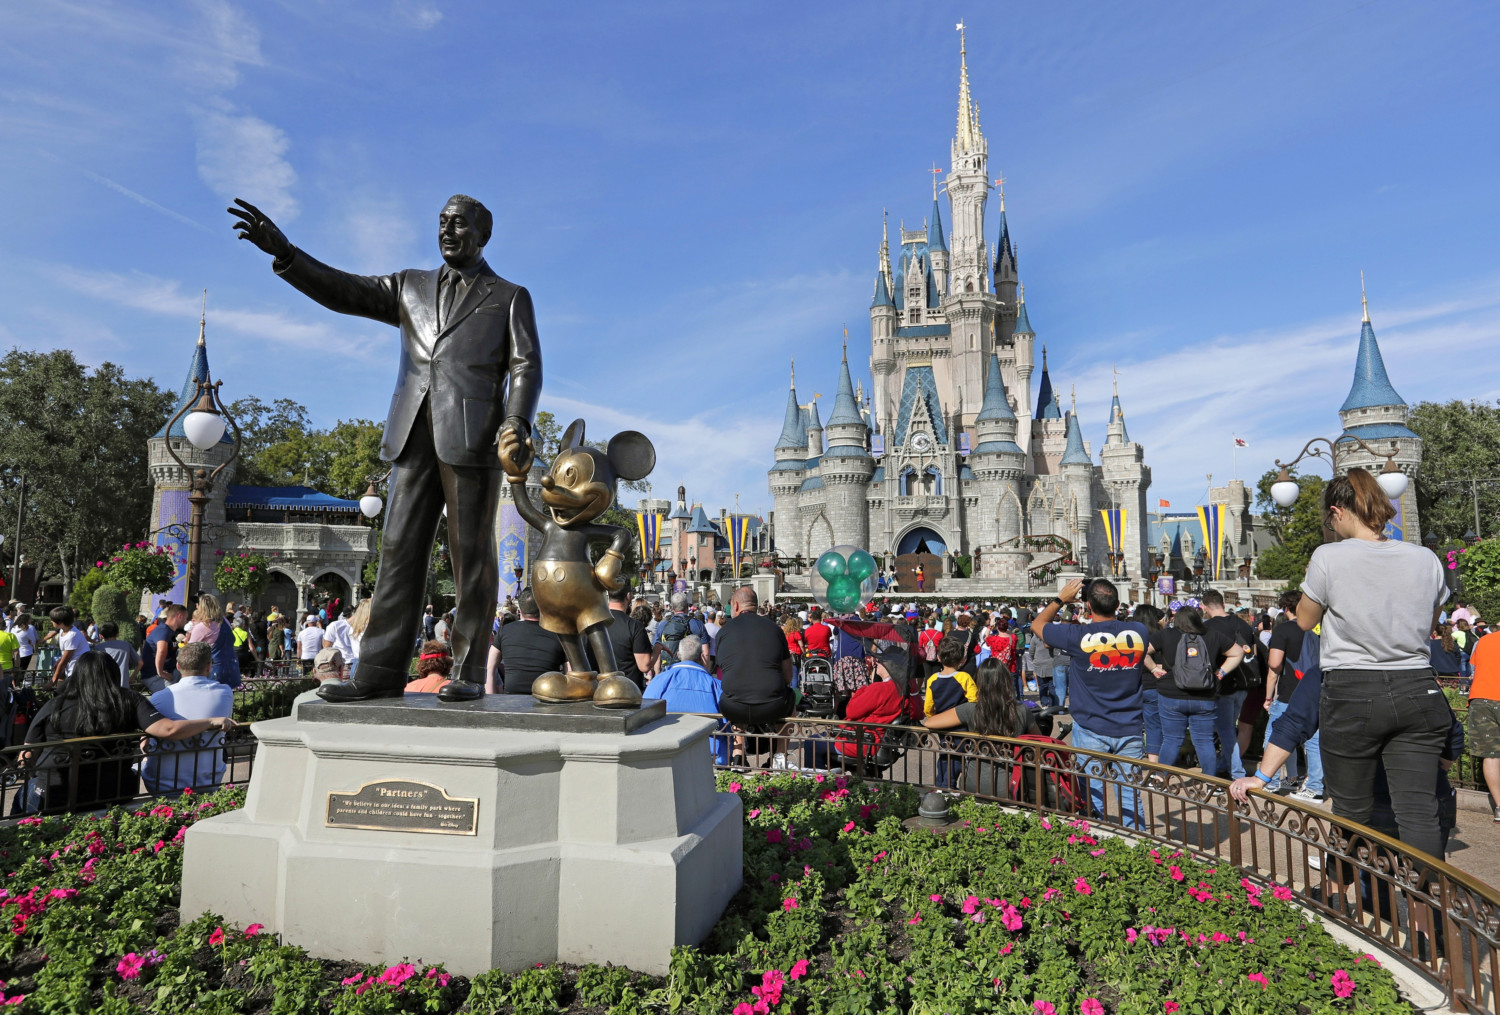 Walt Disney's statue at Disney World's Magic Kingdom